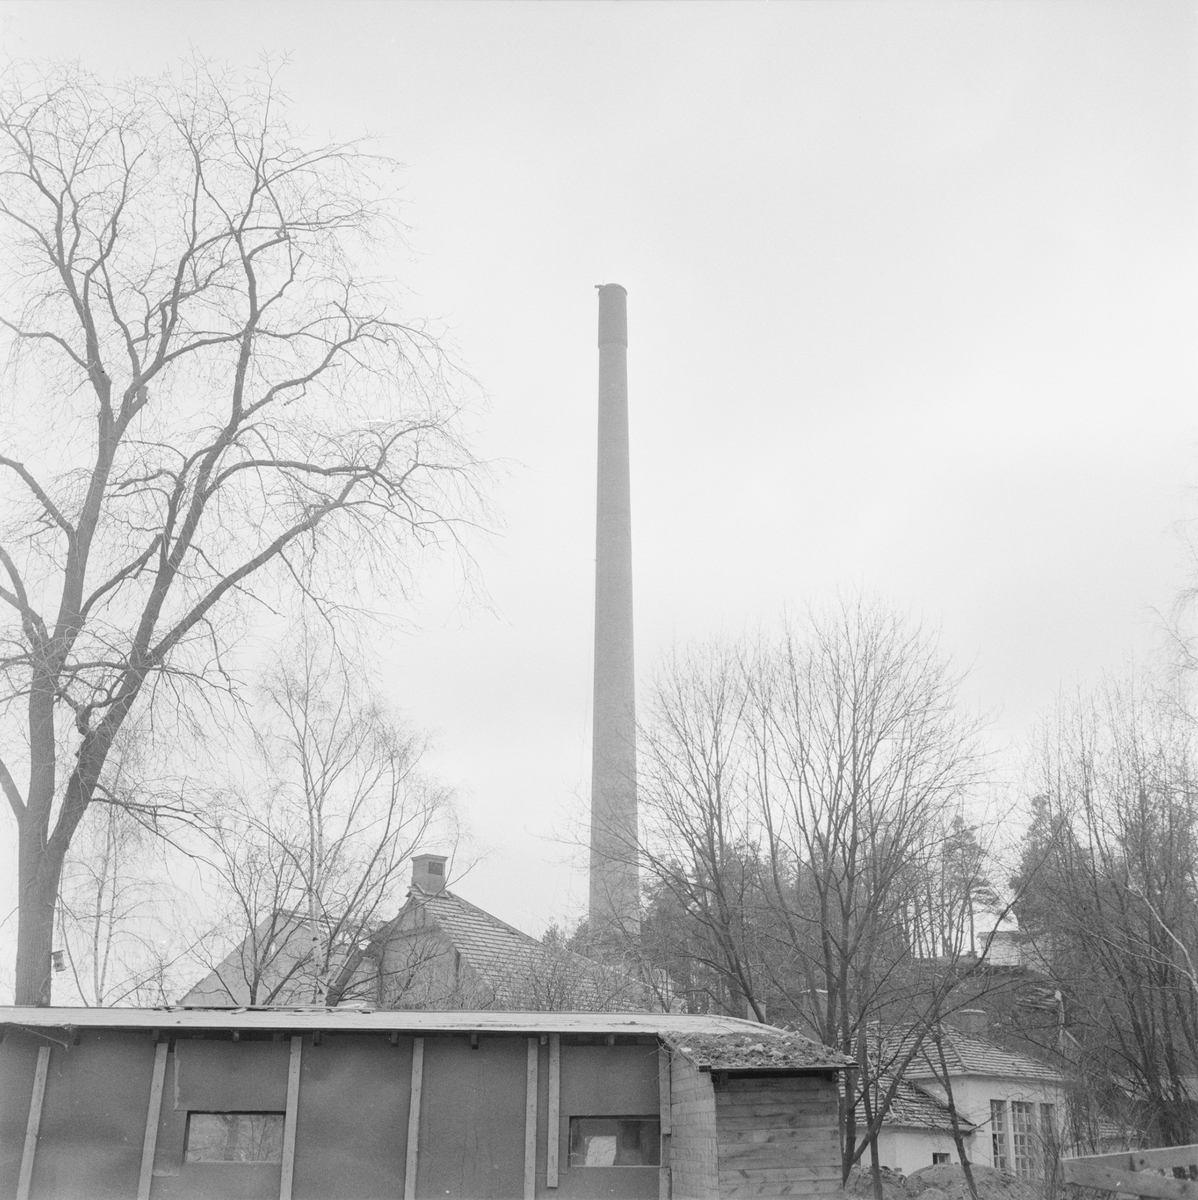 Akademiska sjukhuset, gamla panncentralens skorsten - byggd 1923-24 - faller, Uppsala, april 1960